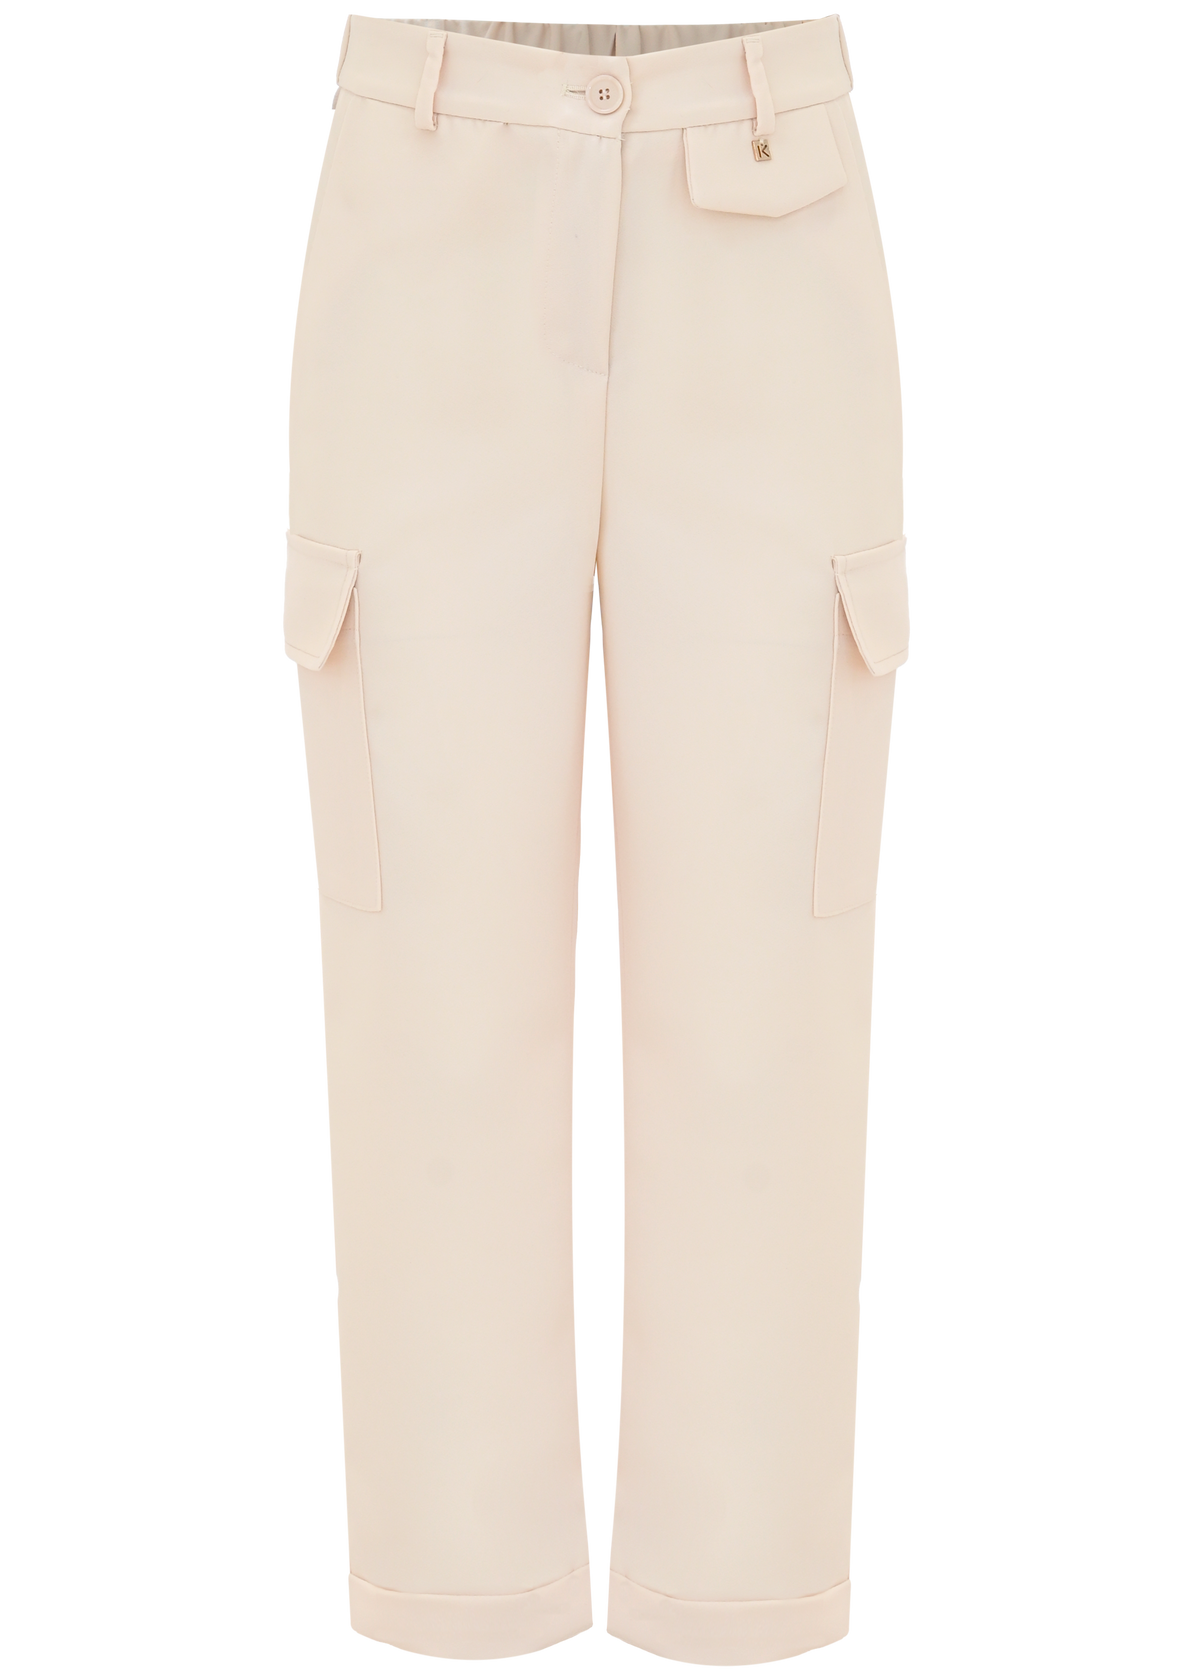 Pantalone Elegante Avorio Con Tasche Laterali